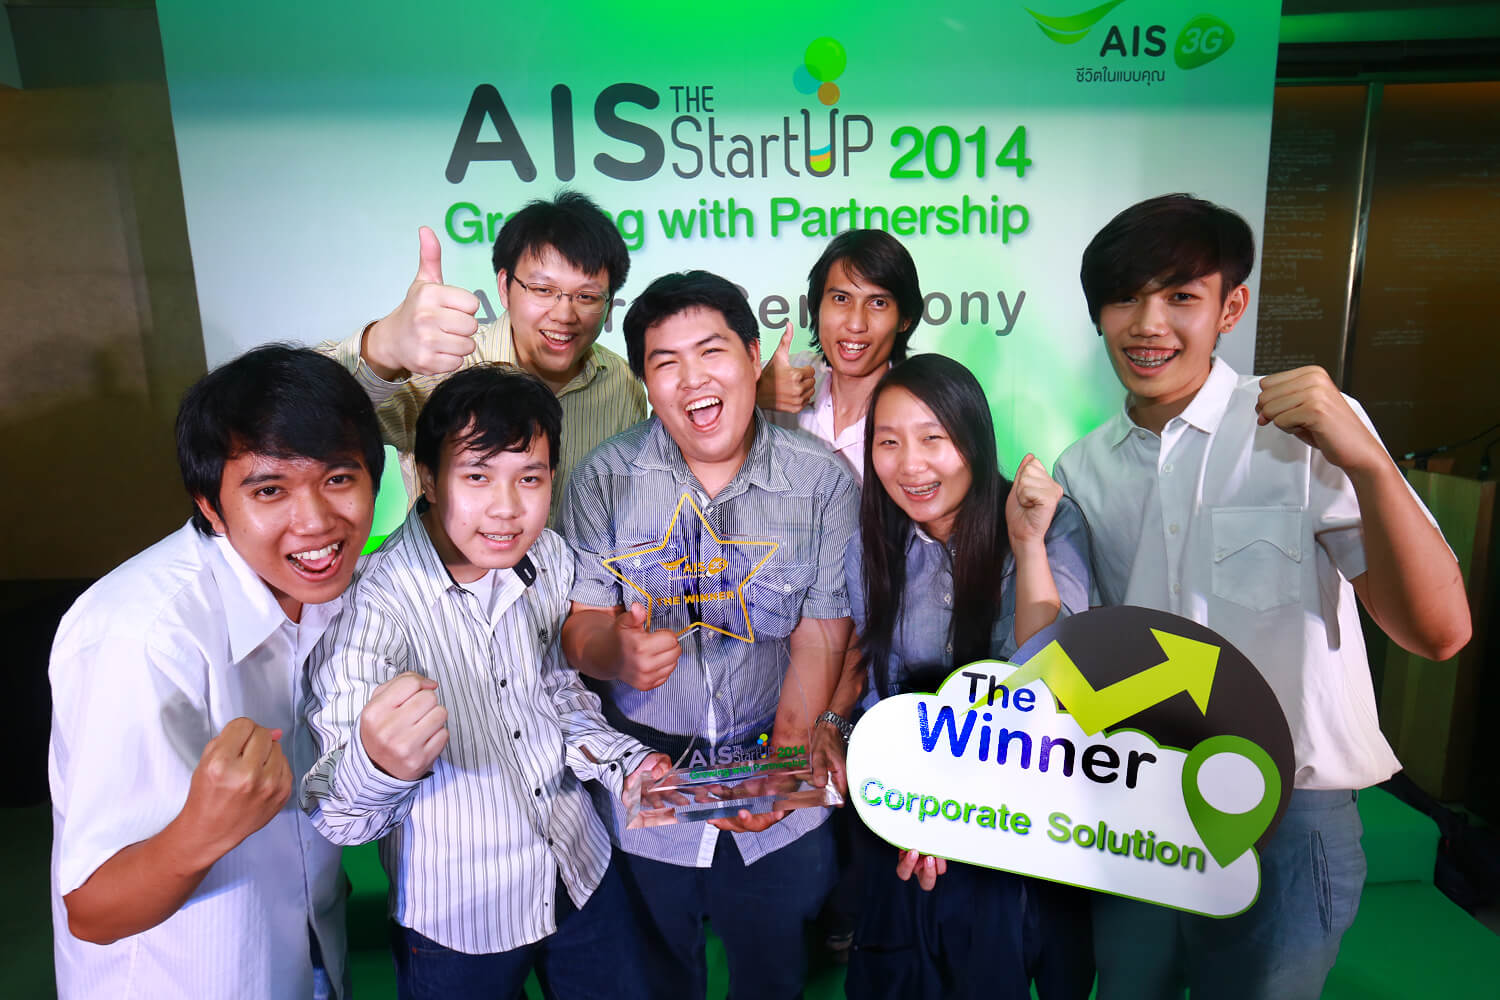 ทีม Nugrean (นักเรียน) - Startup Thailand